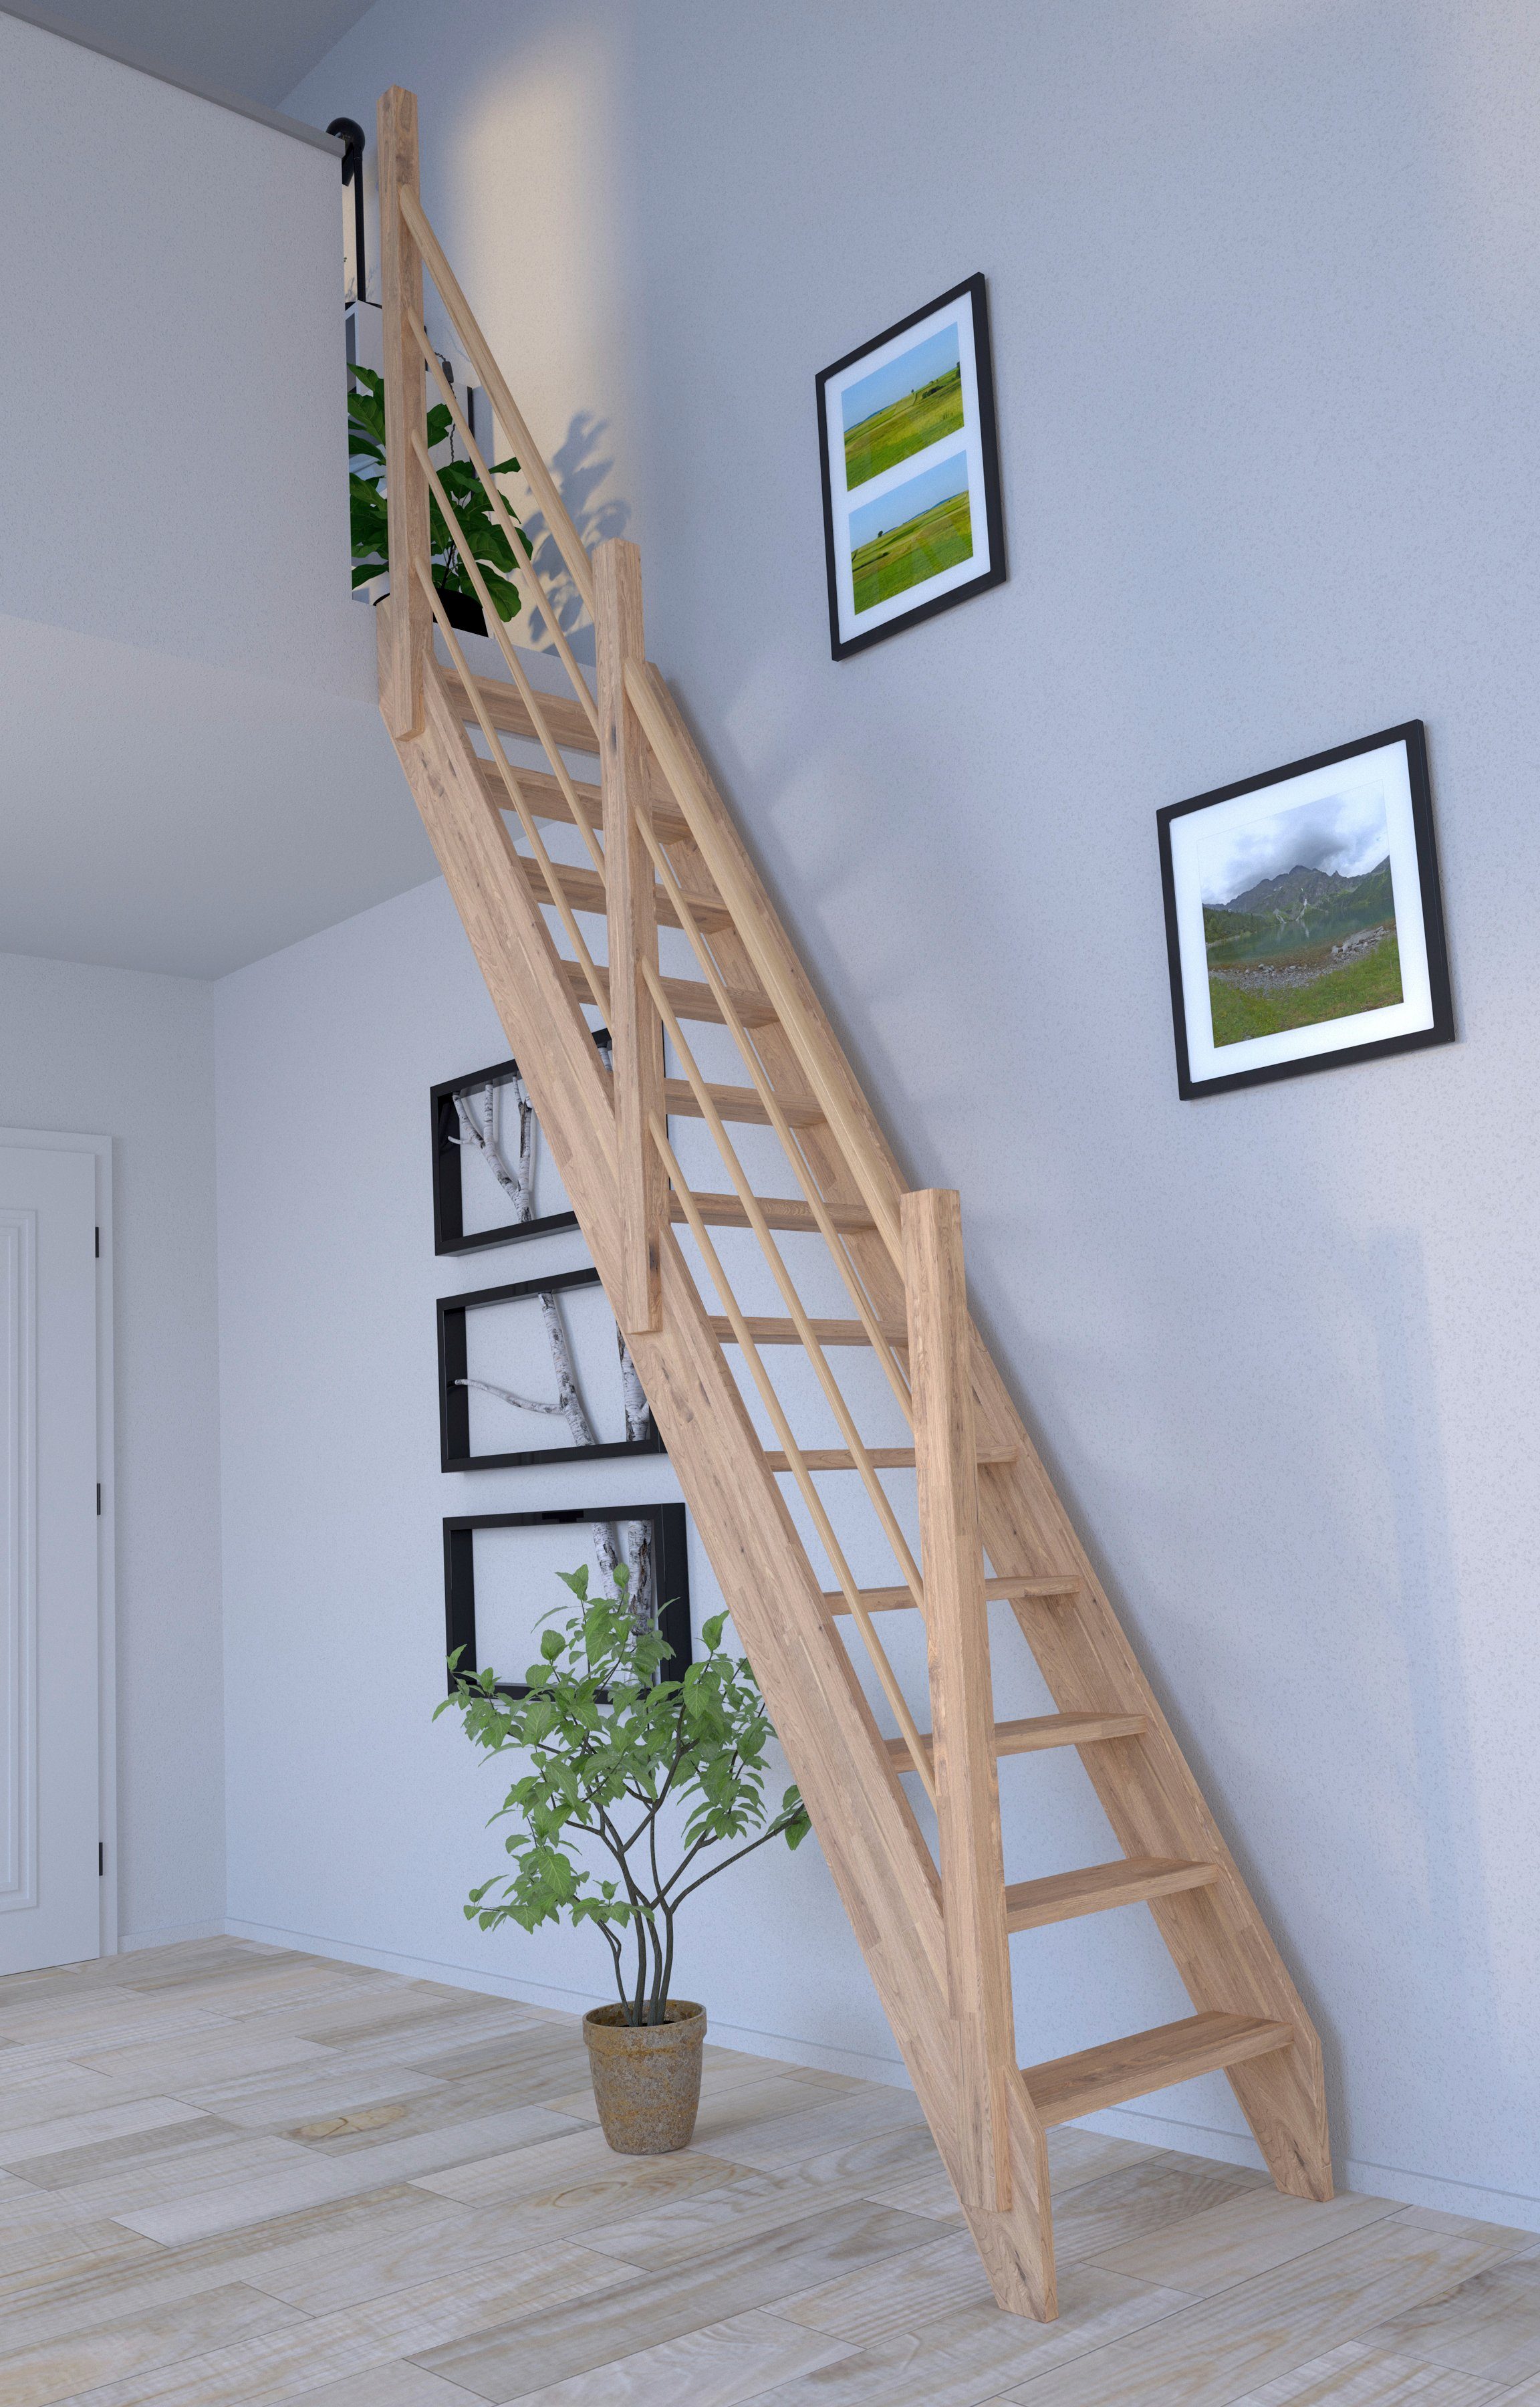 3000, Geländer Design Wangenteile Raumspartreppe Durchgehende offen, Eiche Stufen Rechts, Starwood Holz-Holz